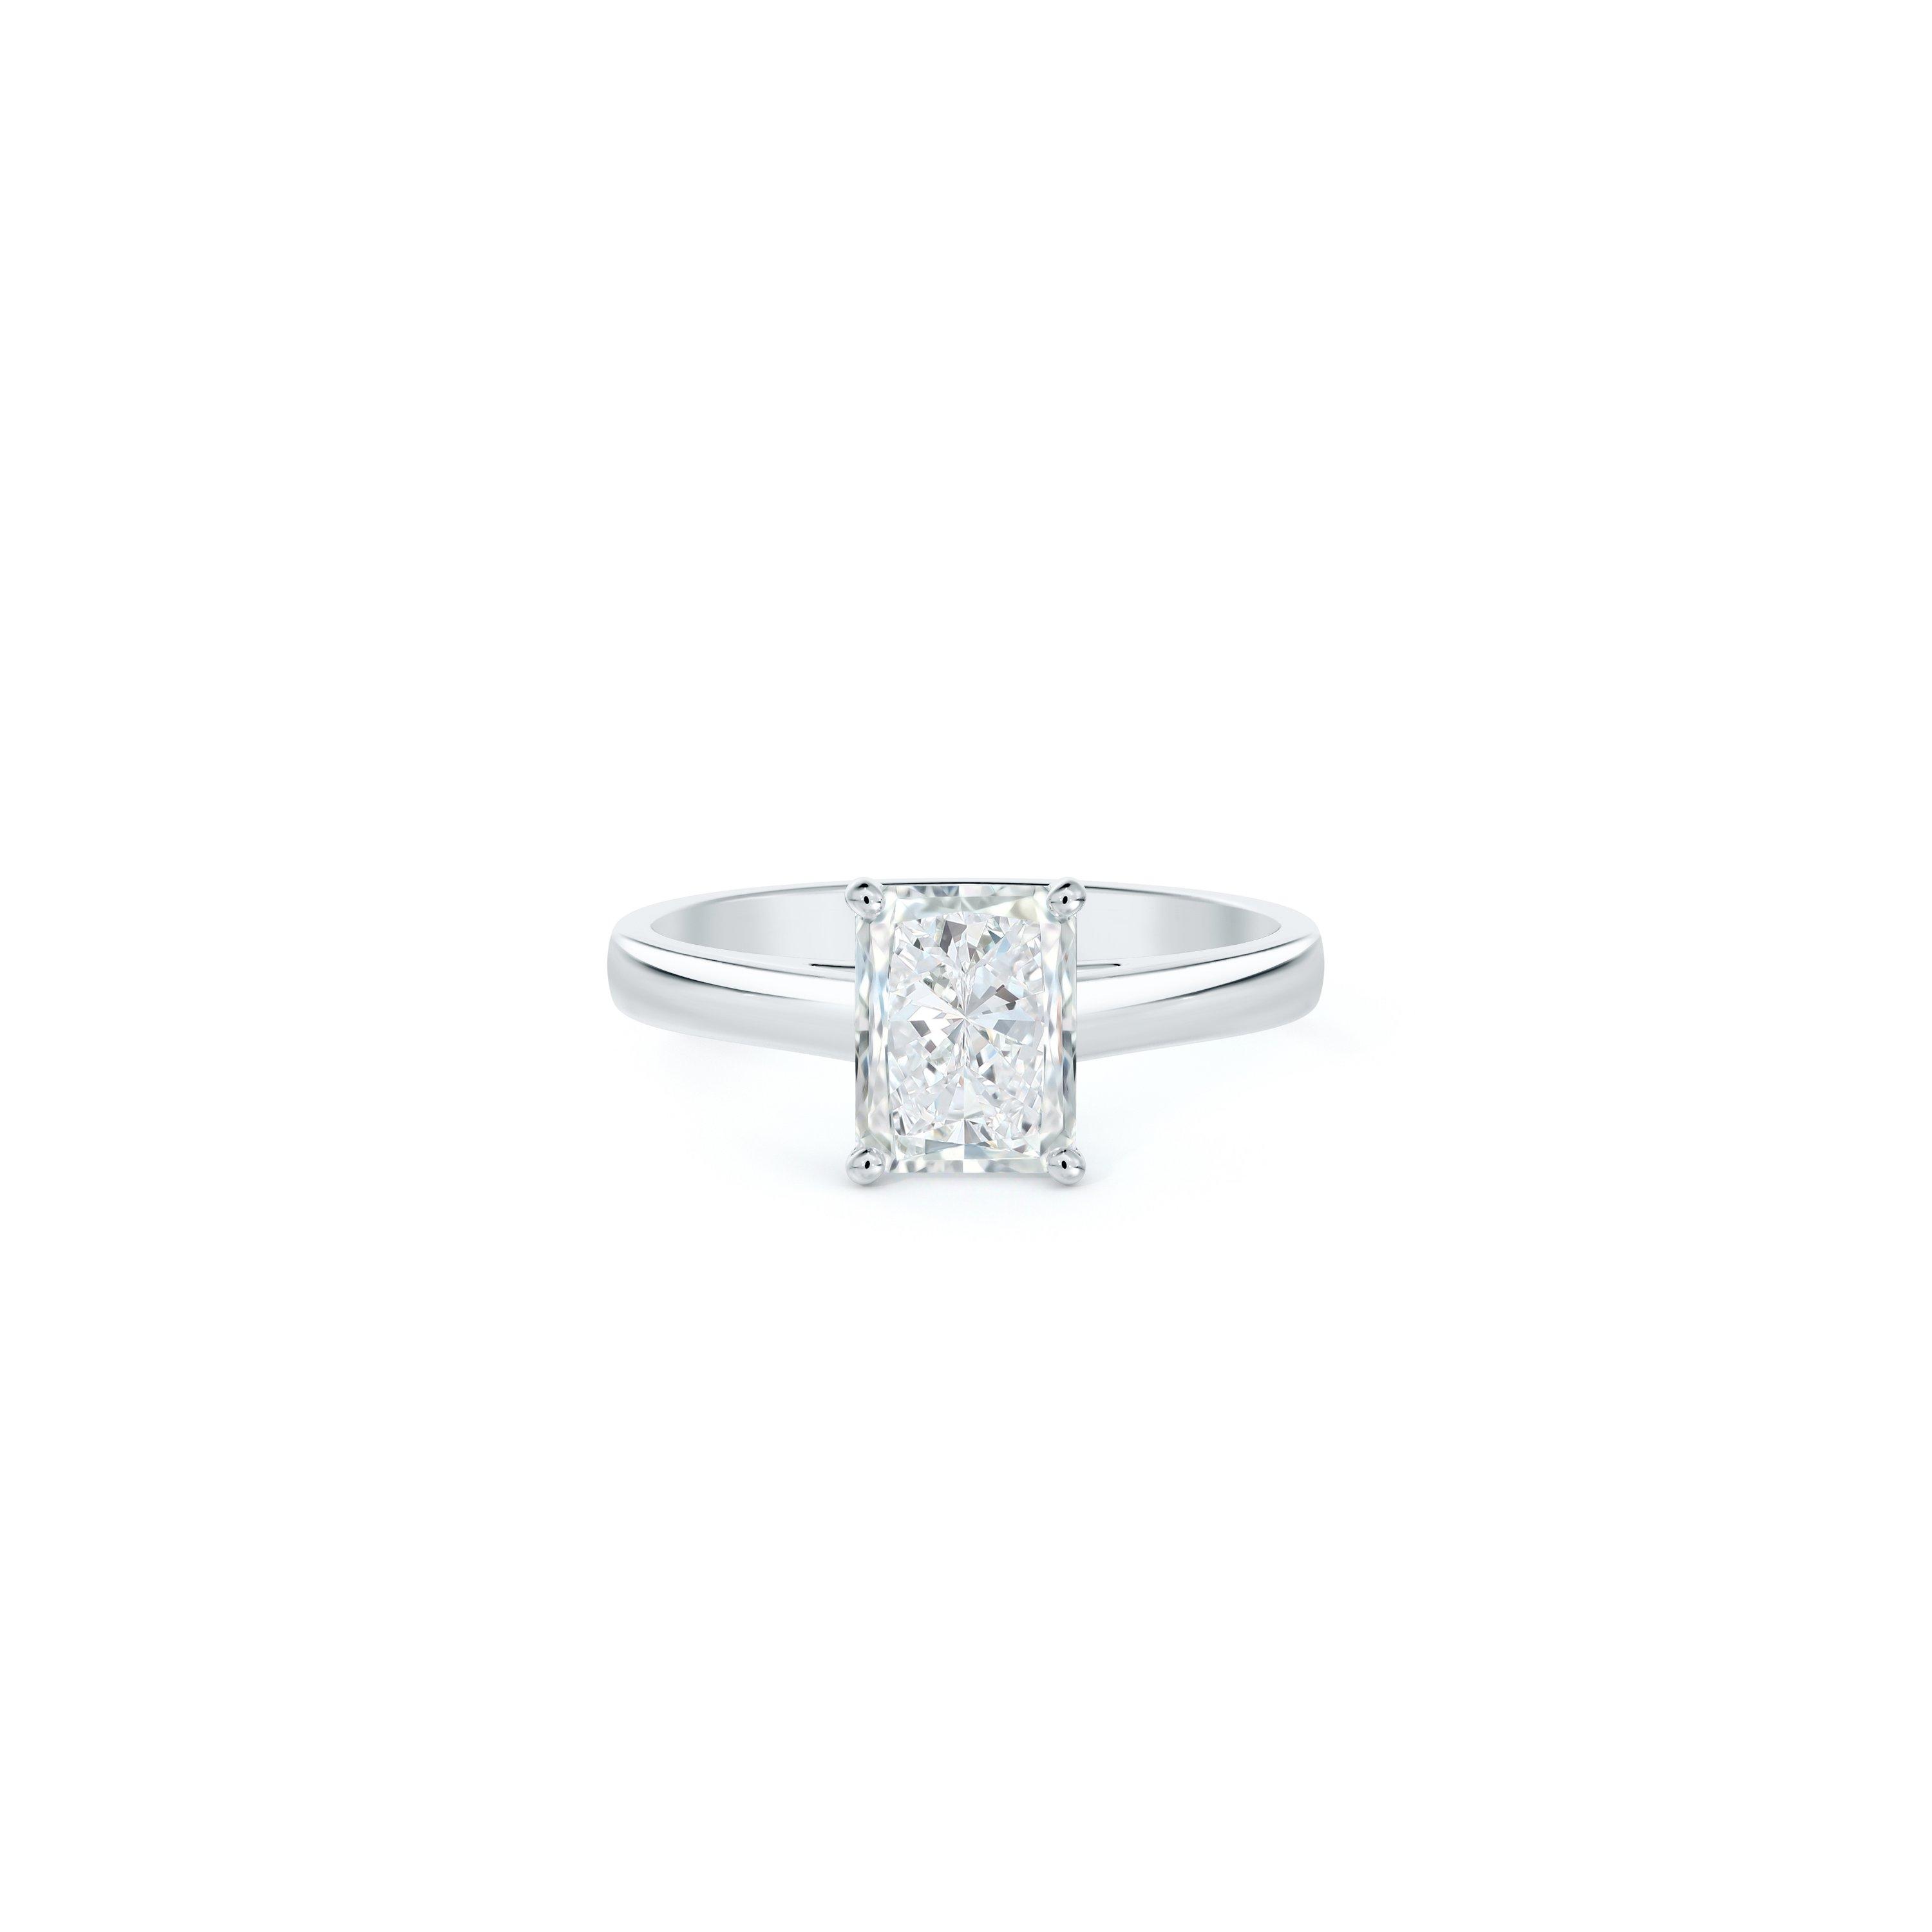 DB Classic radiant cut diamond ring in platinum